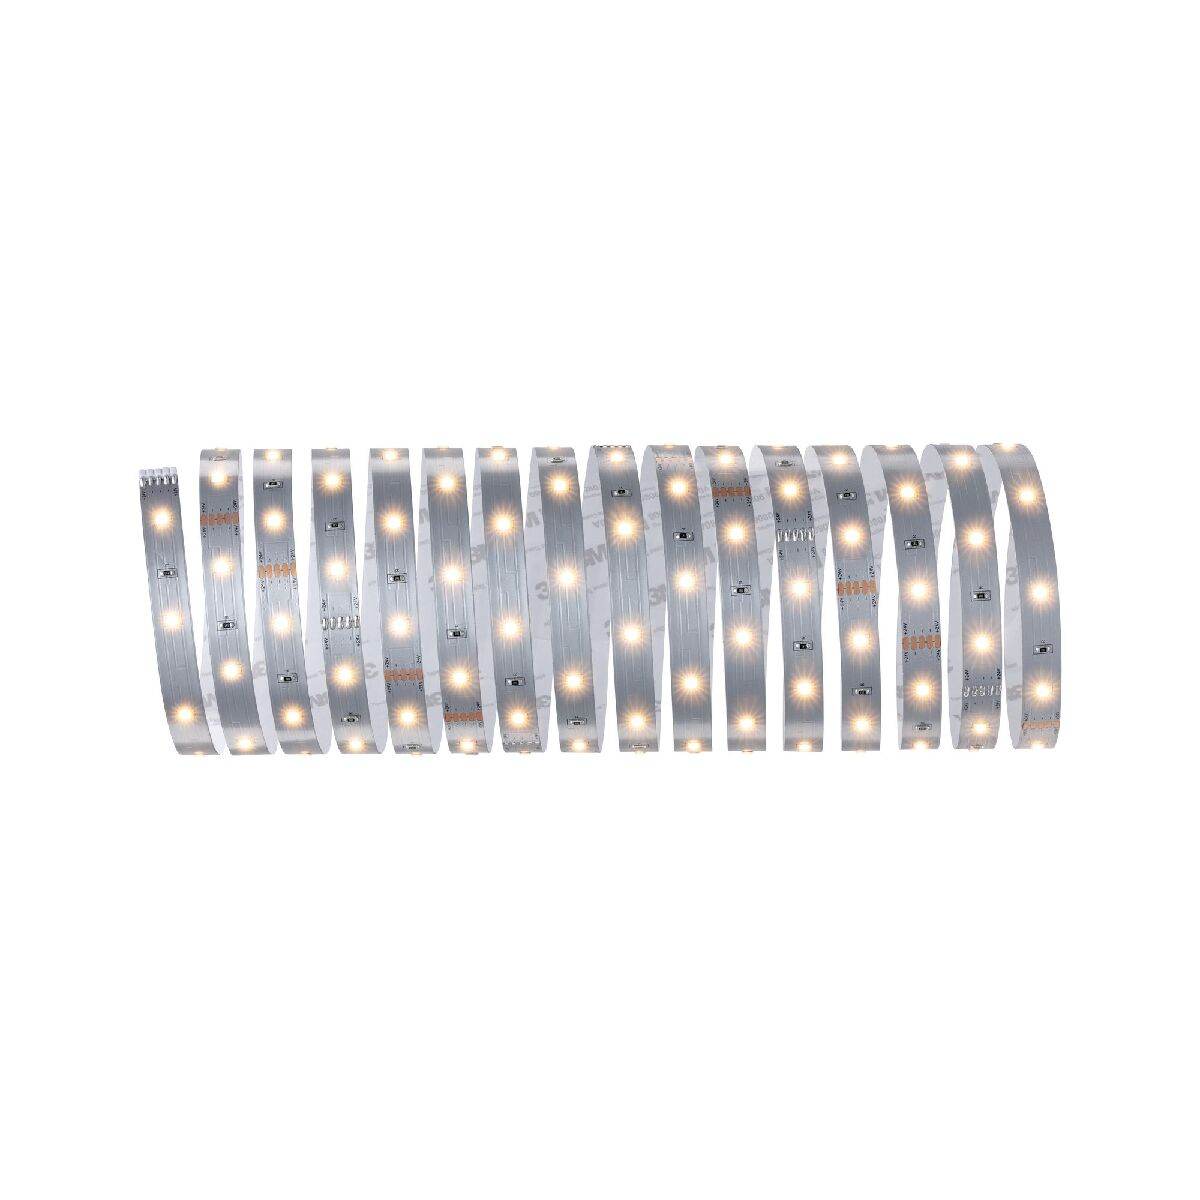 Paulmann MaxLED Stripe Silber 5m | Watt unbeschichtet your-smarthome Streifen Warmweiß LED | - 10 Dein LED Home - - Innenleuchten | | dimmbar - Streifen | - | Onlineshop Licht 2700K Einzel Smart Stripe